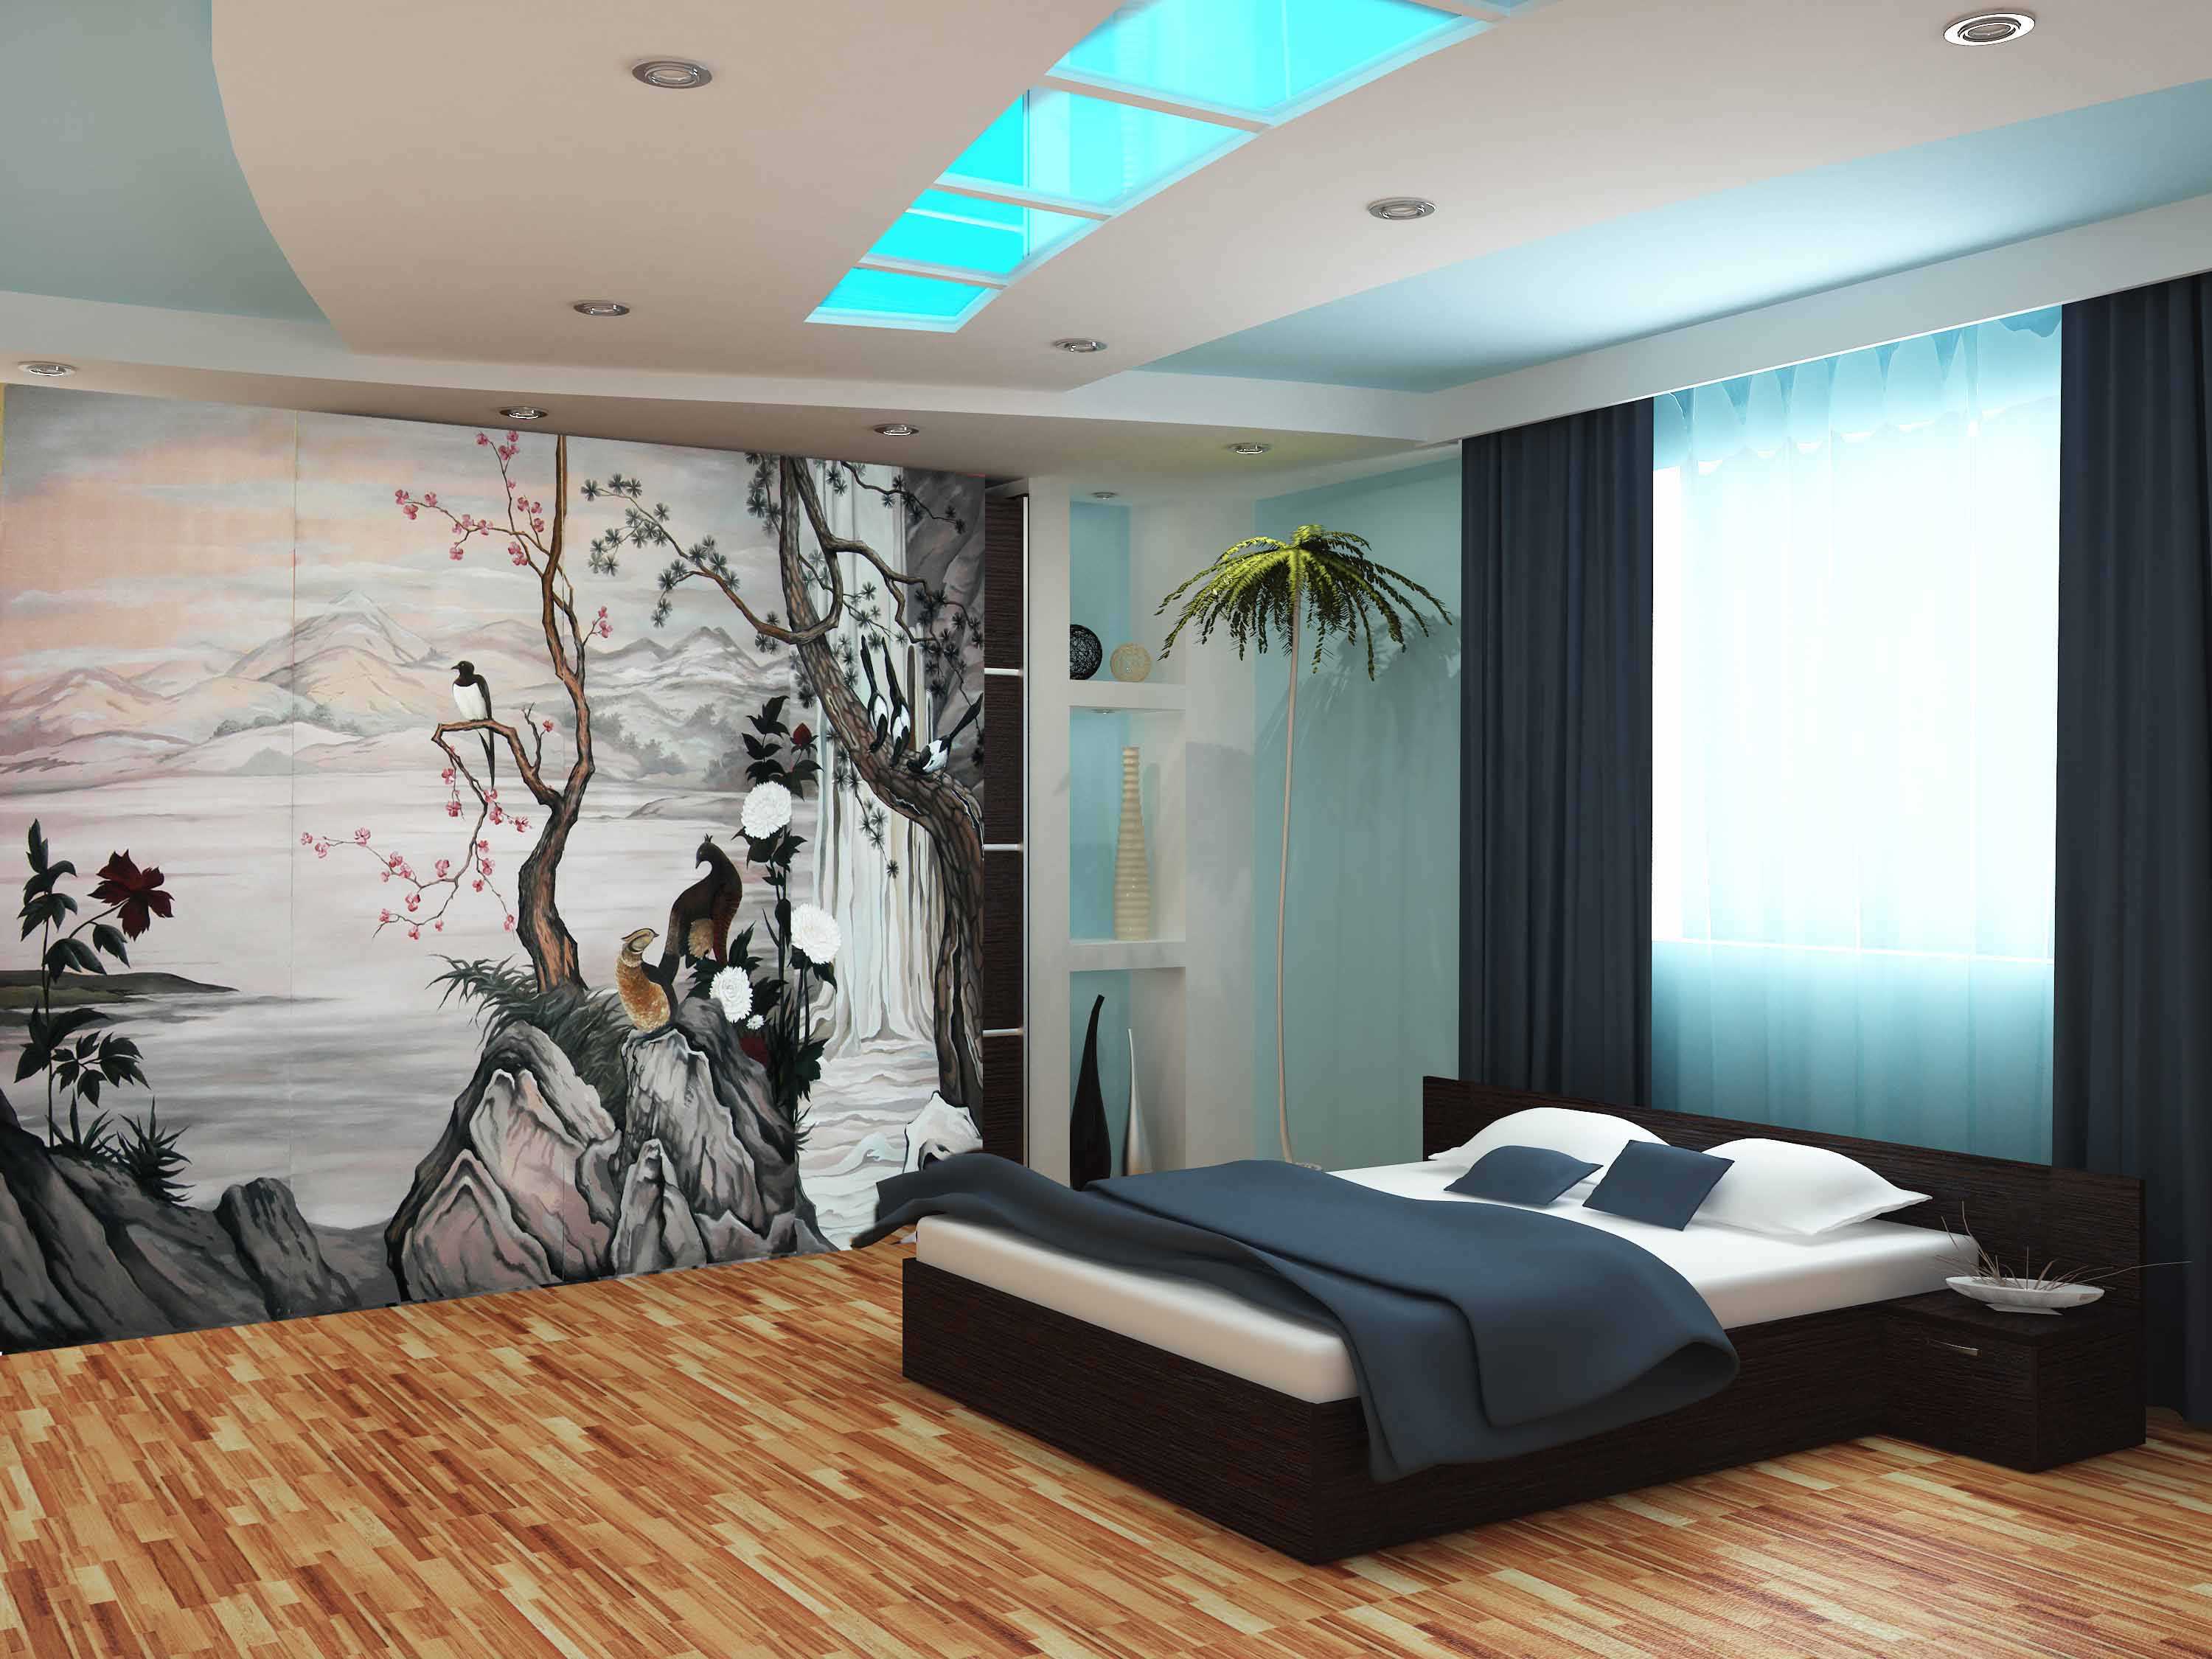 l'idée de design lumineux de l'appartement avec la peinture des murs